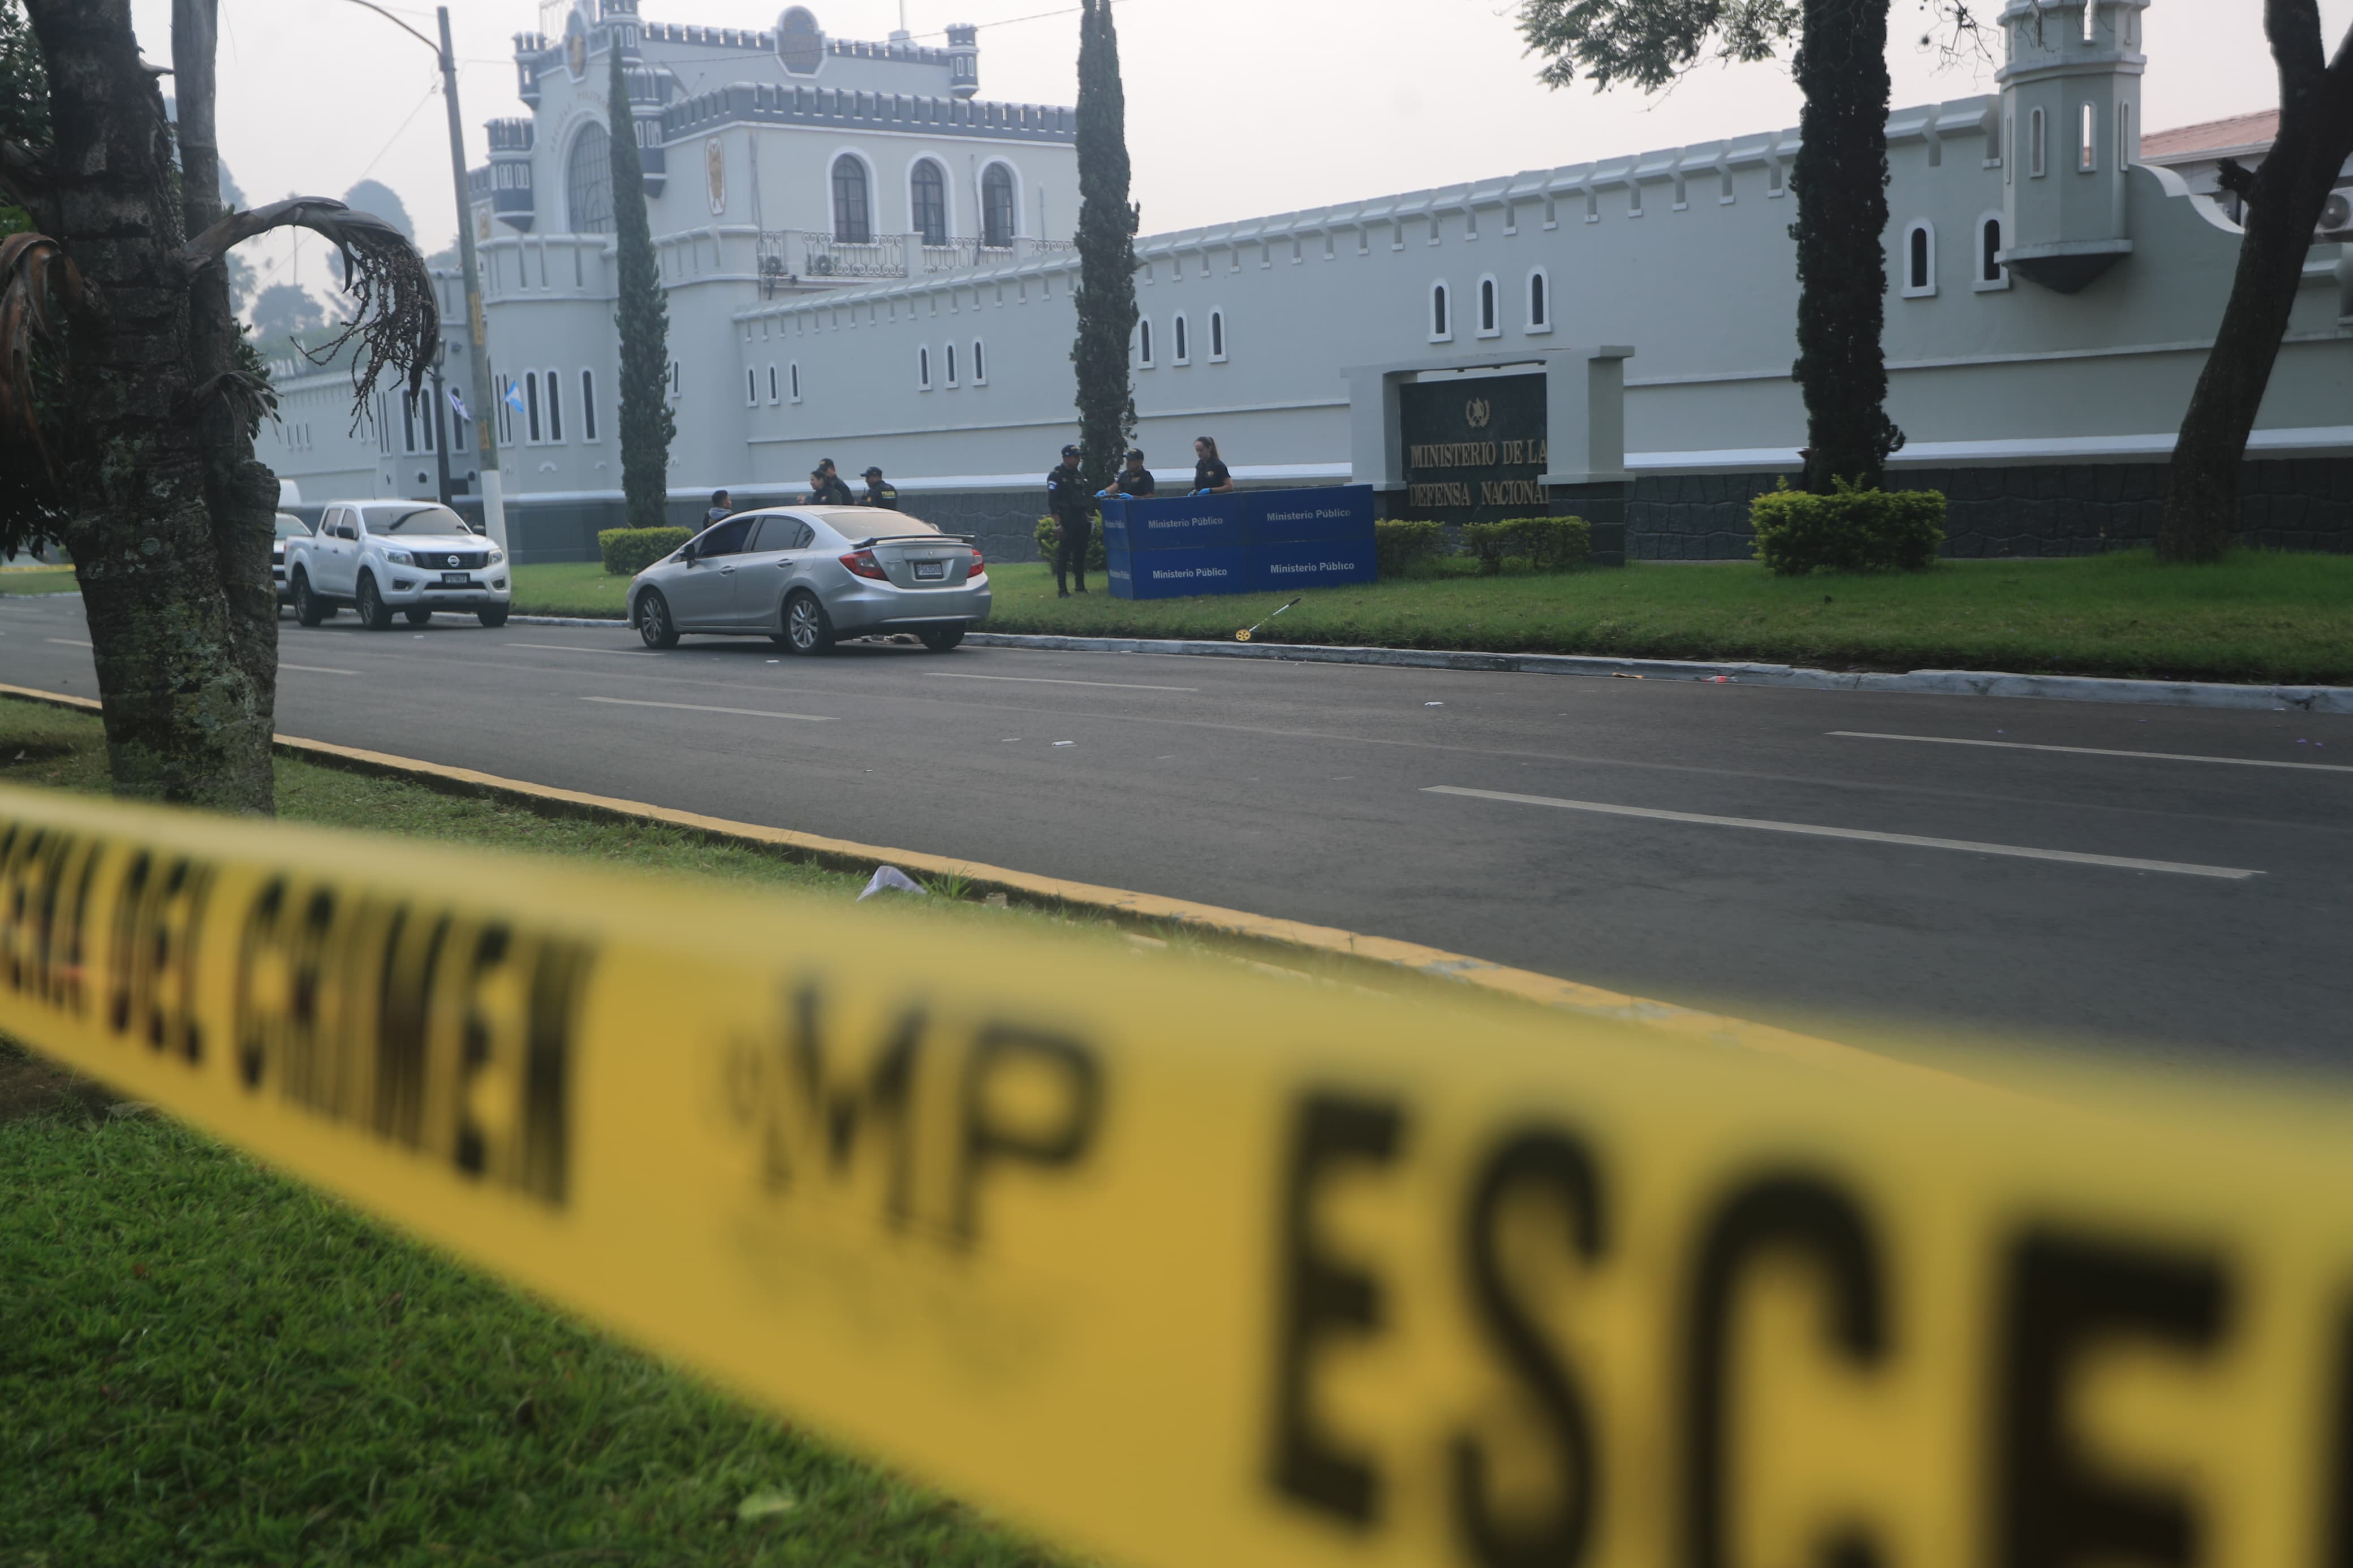 Investigadores recaban evidencias frente al Ministerio de la Defensa por un ataque armado que dejó un muerto. (Foto Prensa Libre: O. Vásquez)